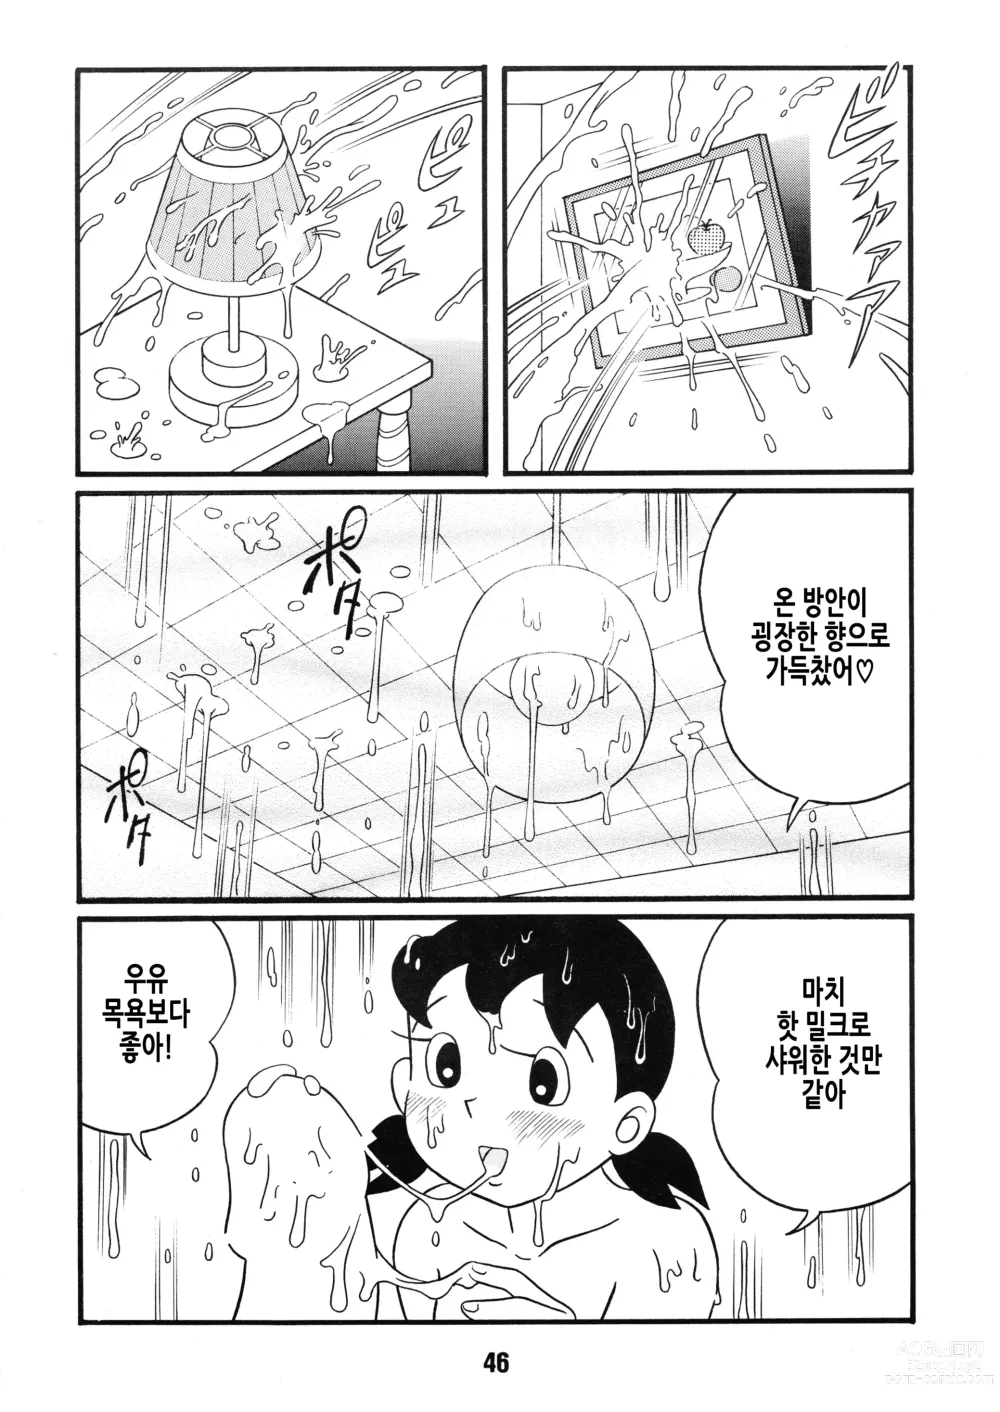 Page 47 of doujinshi Chonchorin